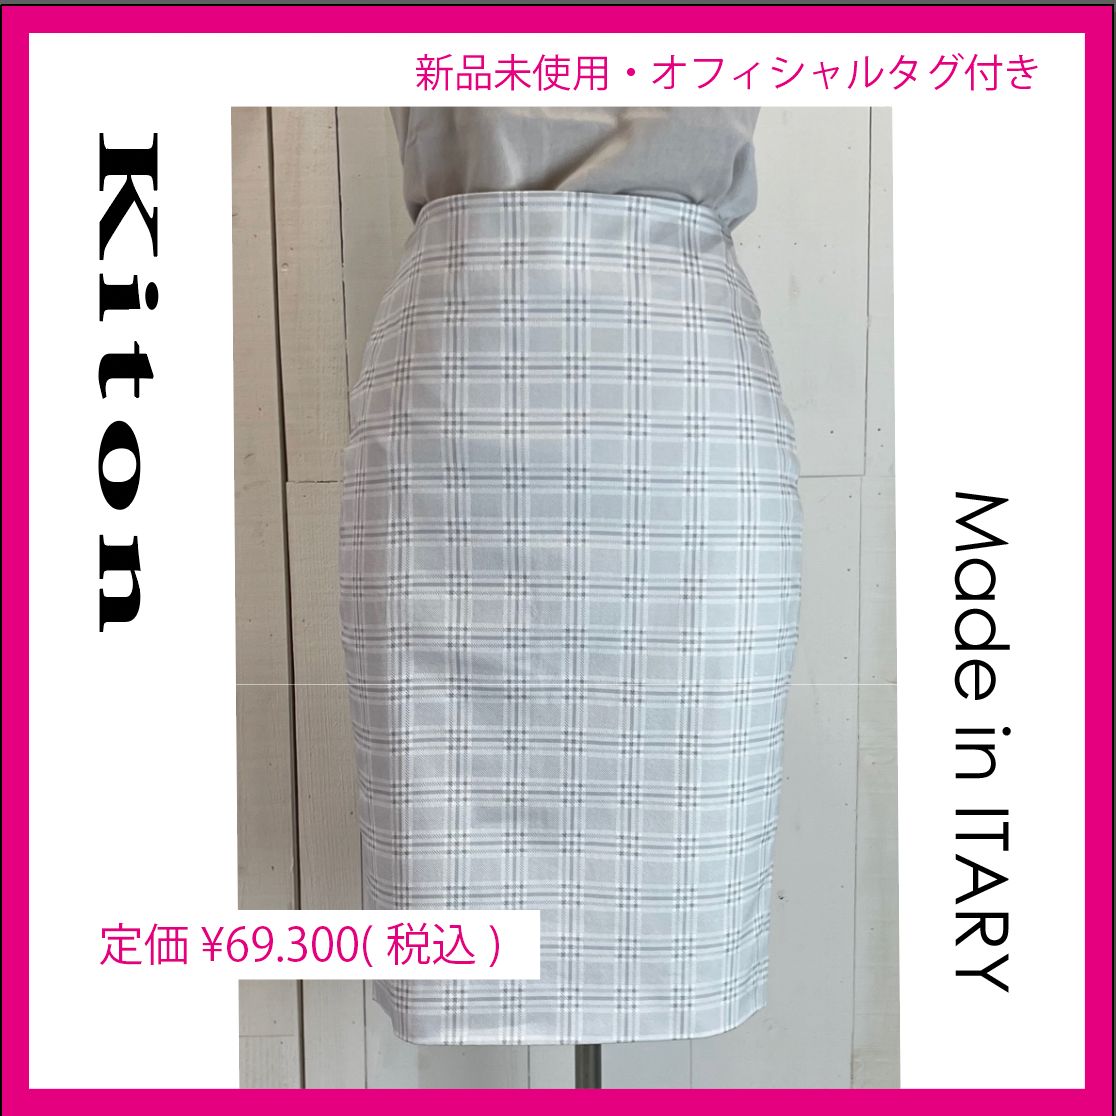 【 新品未使用☆タグ付き 】KITON〈キトン〉 スカートサイズ44フレンチのインポートアパレル